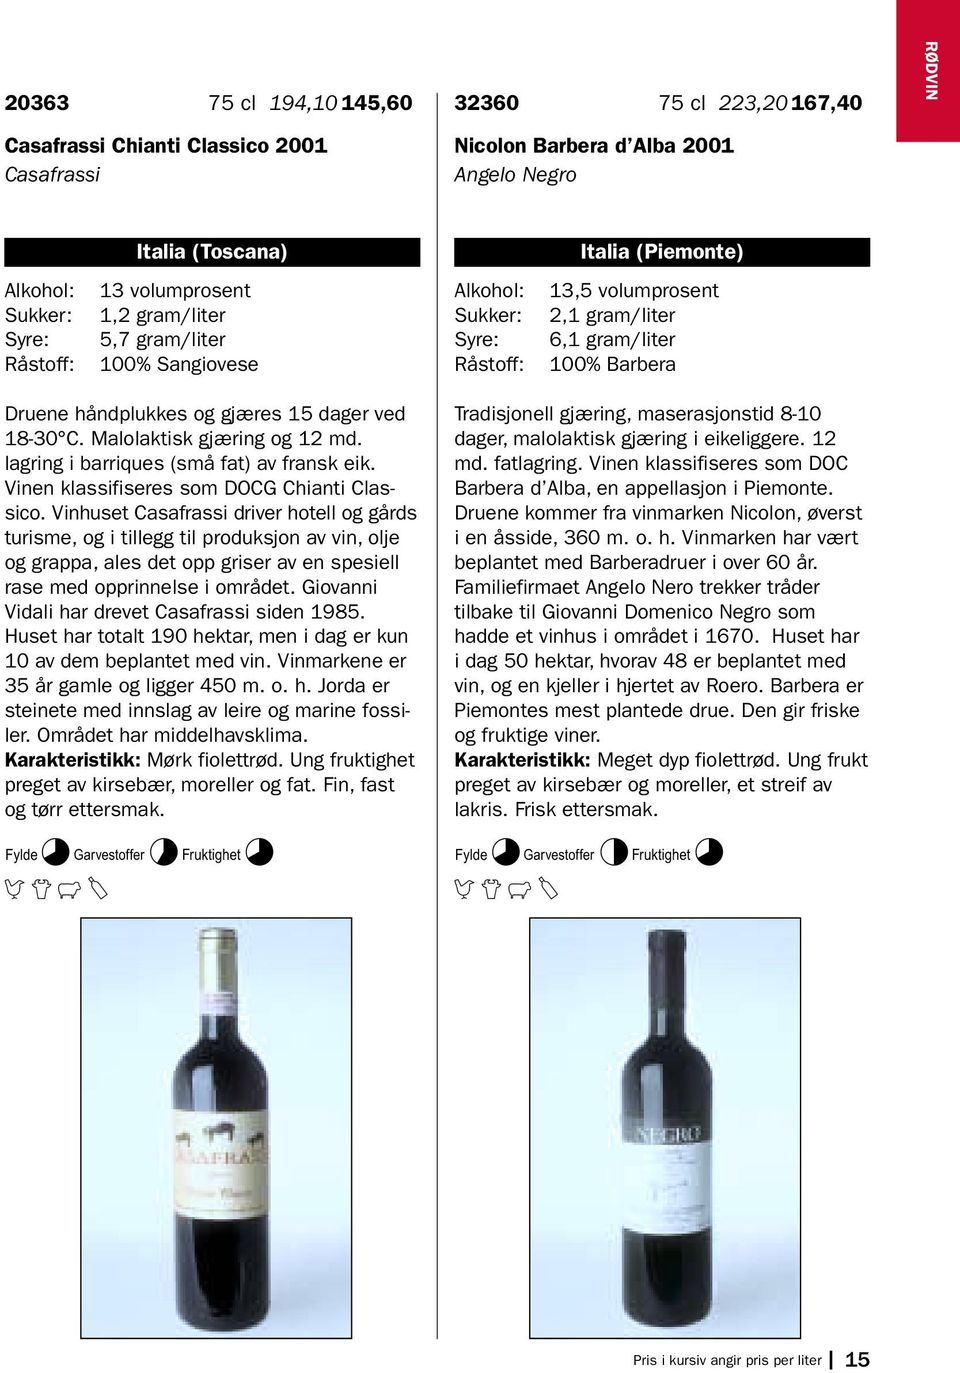 lagring i barriques (små fat) av fransk eik. Vinen klassifiseres som DOCG Chianti Classico.